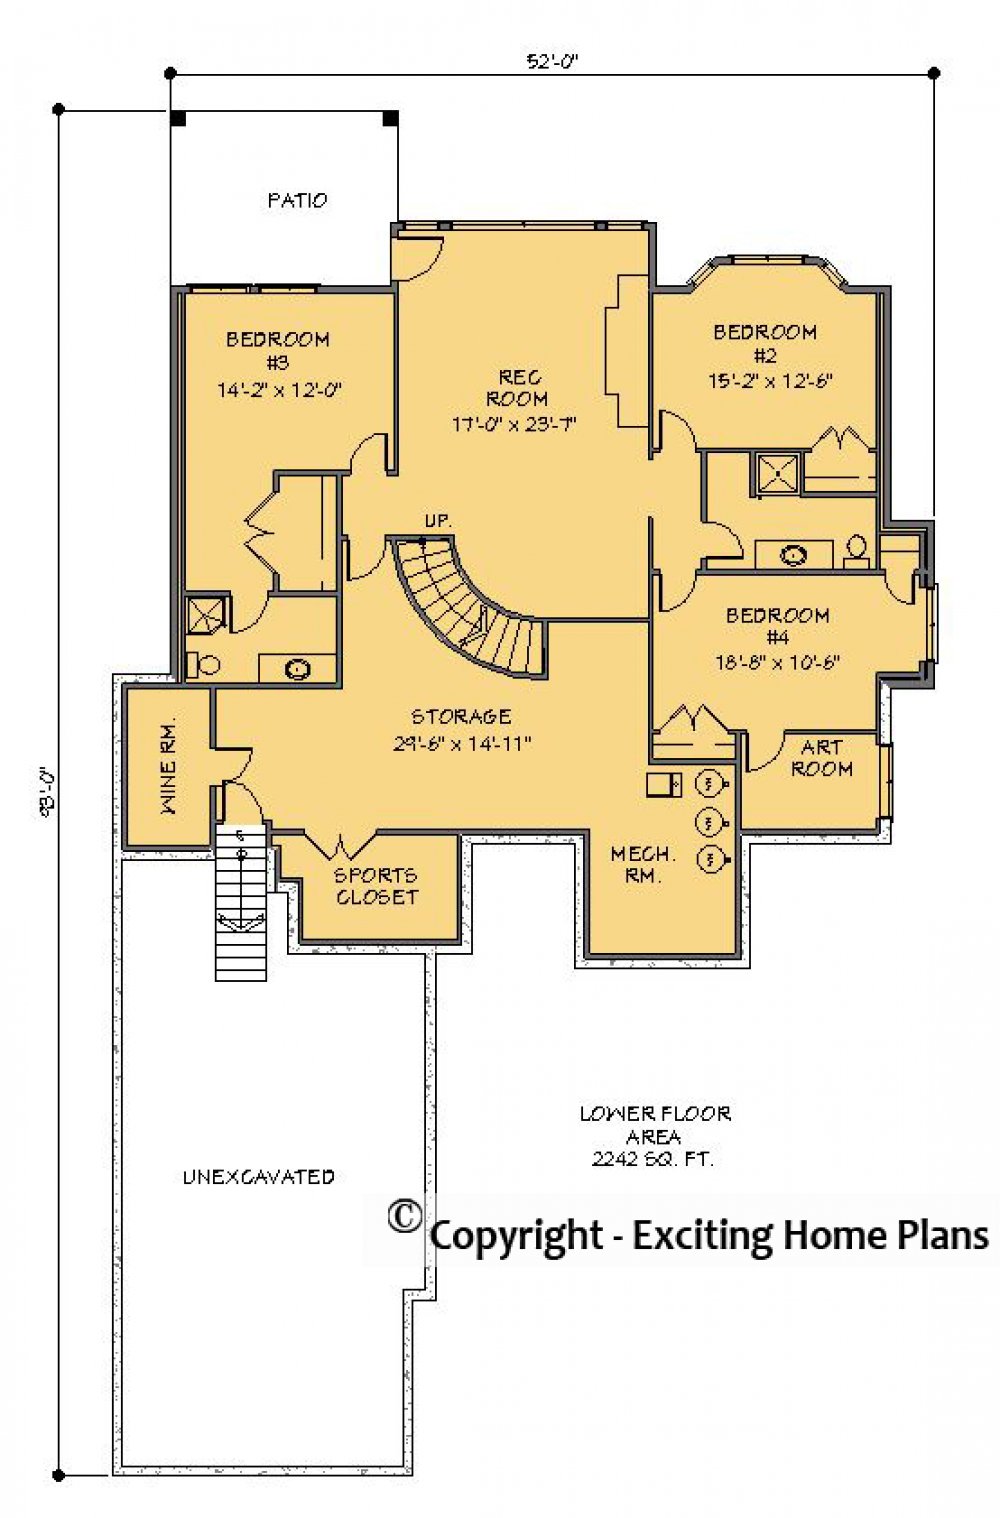 House Plan E1234-10 Lower Floor Plan